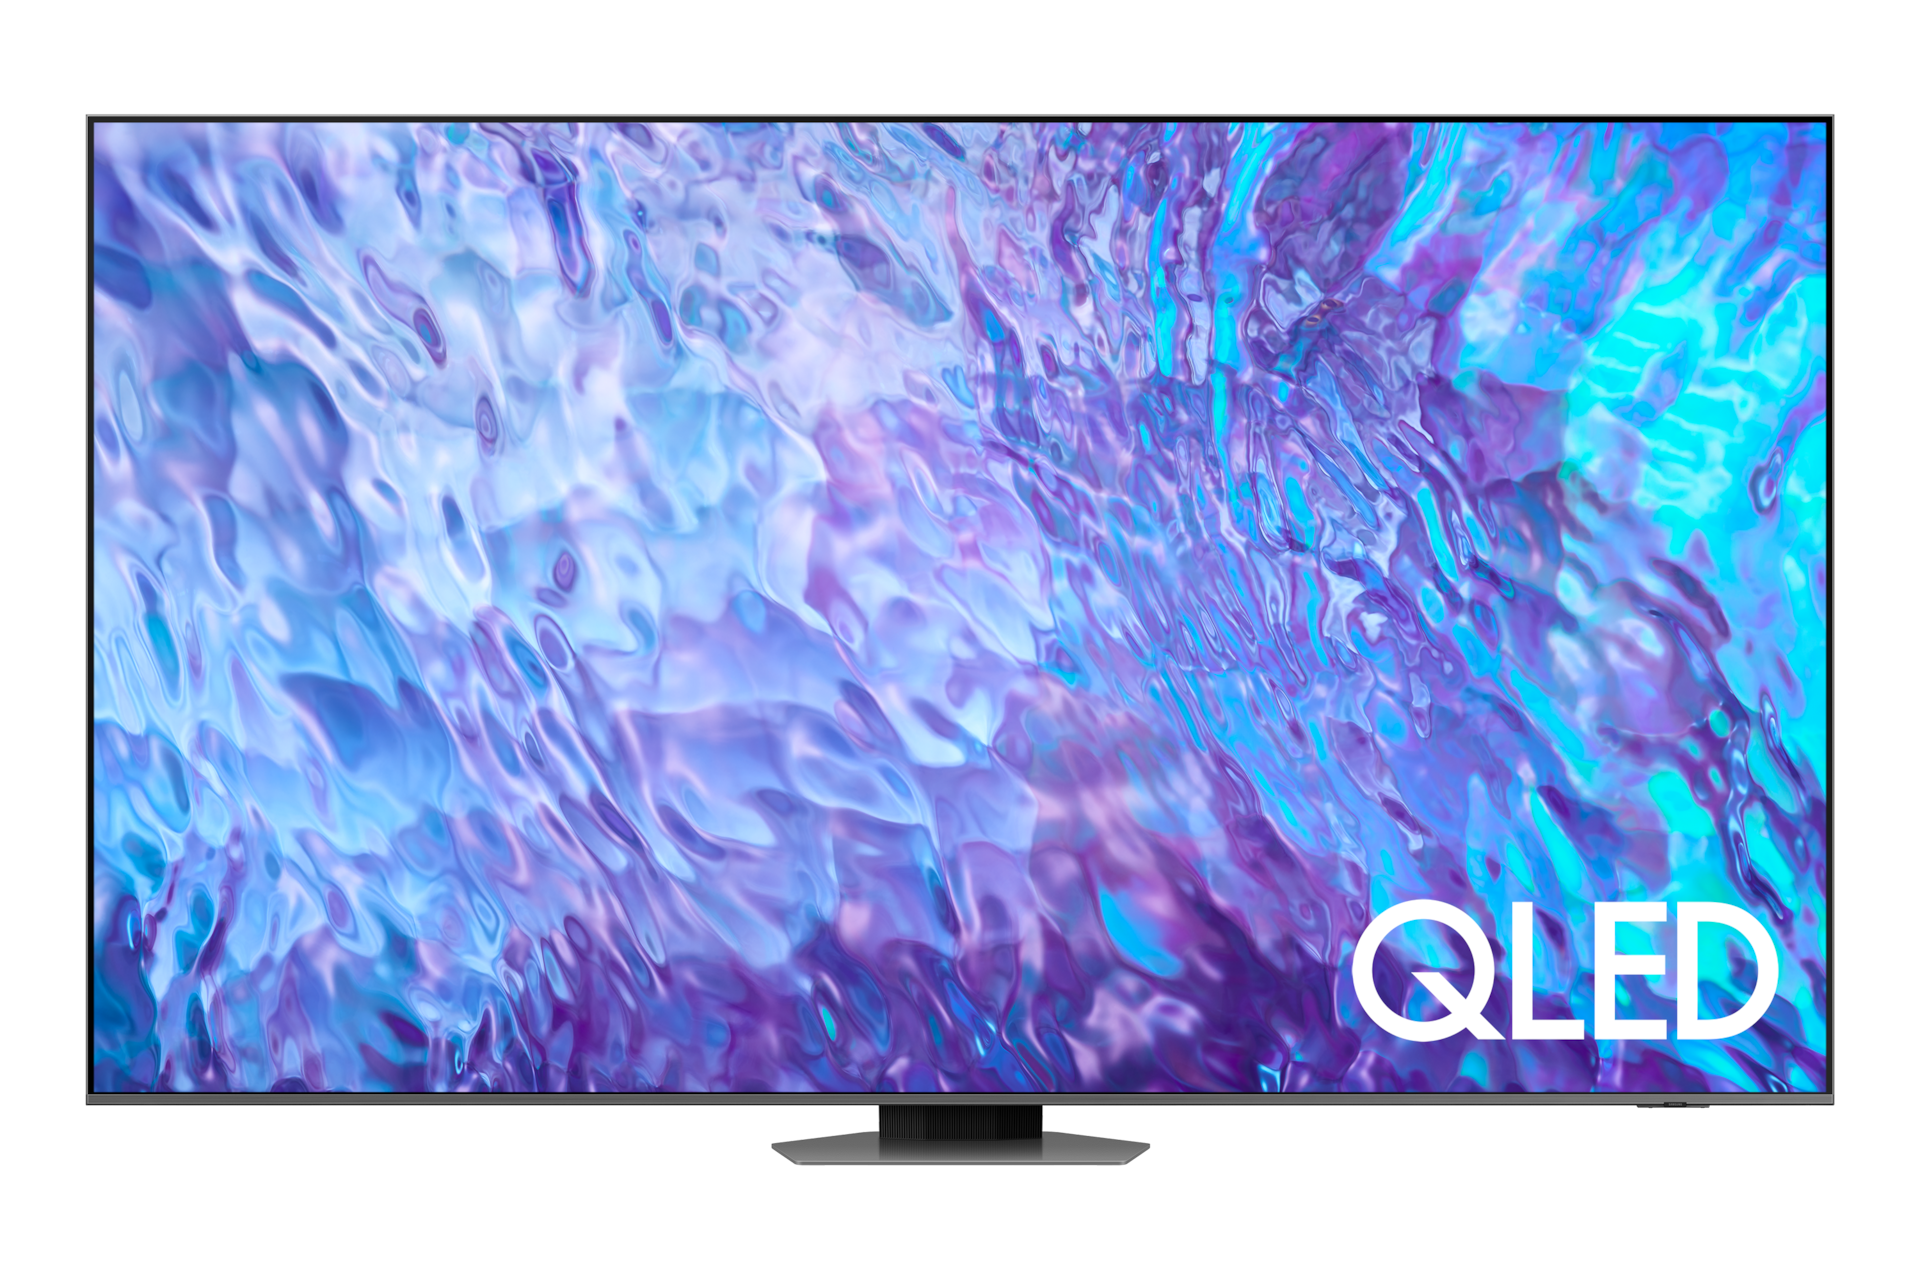 Samsung presenta un gigantesco televisor QLED de 98 pulgadas con